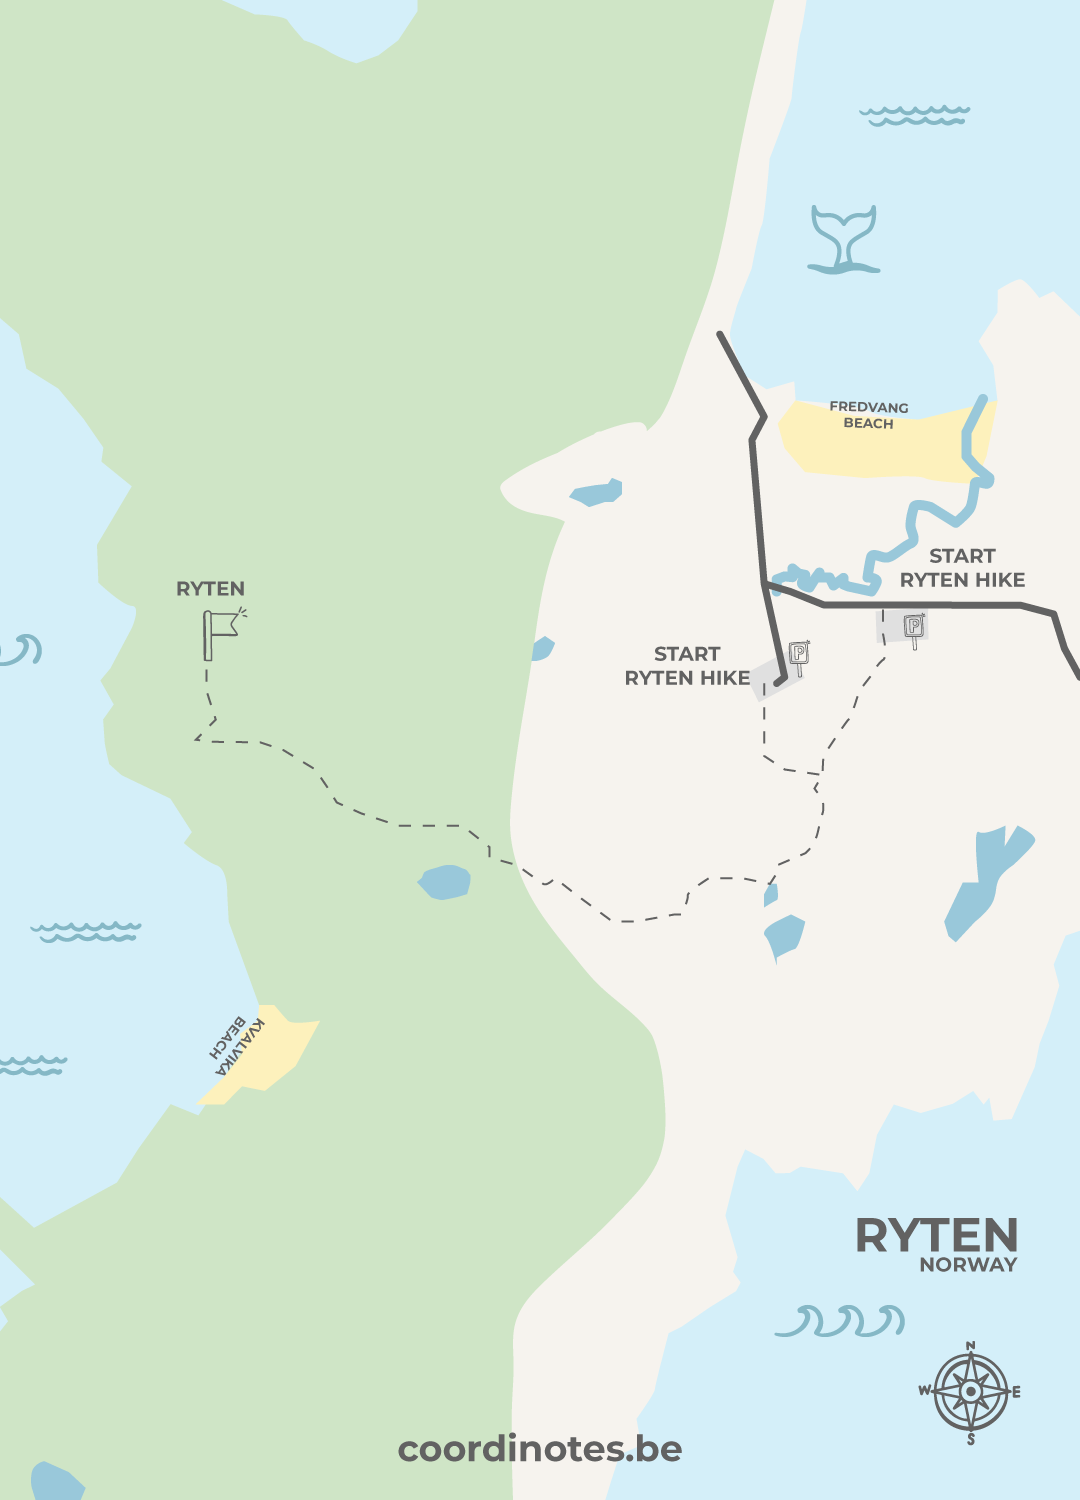 Map for the Ryten hike